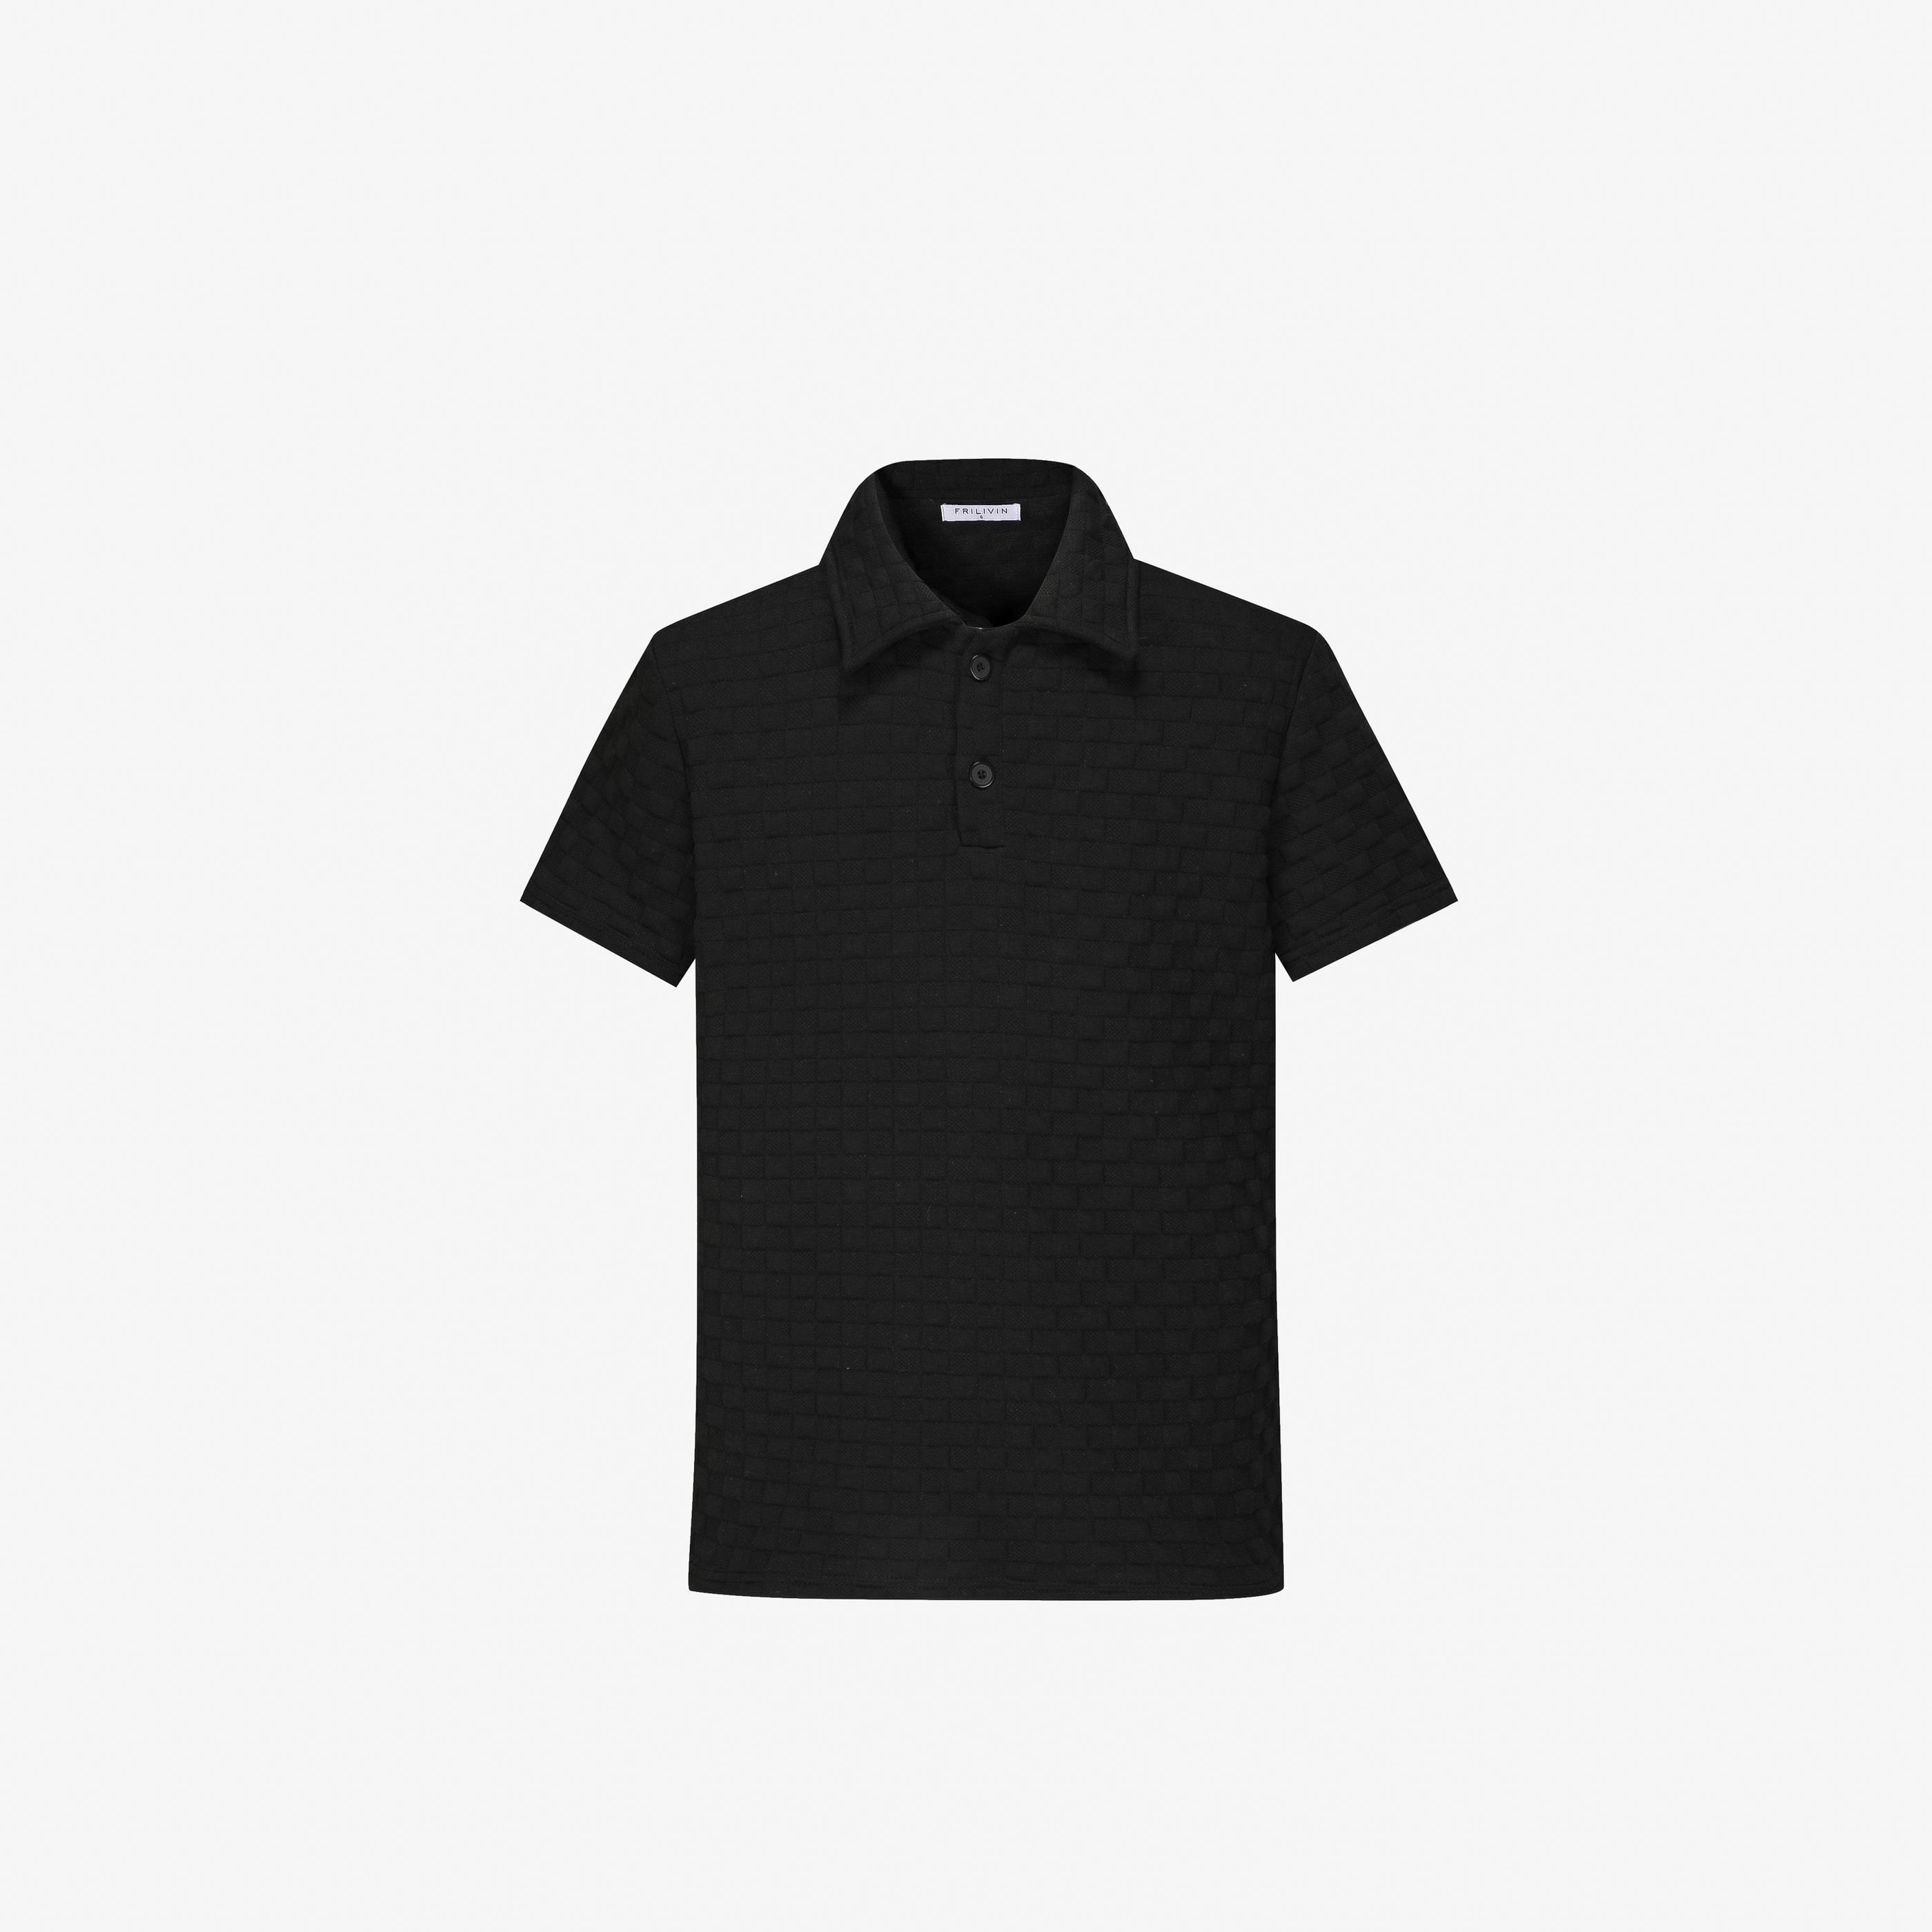 T-shirts Homme Noir FRILIVIN BM1552-1 #c Efashion Paris